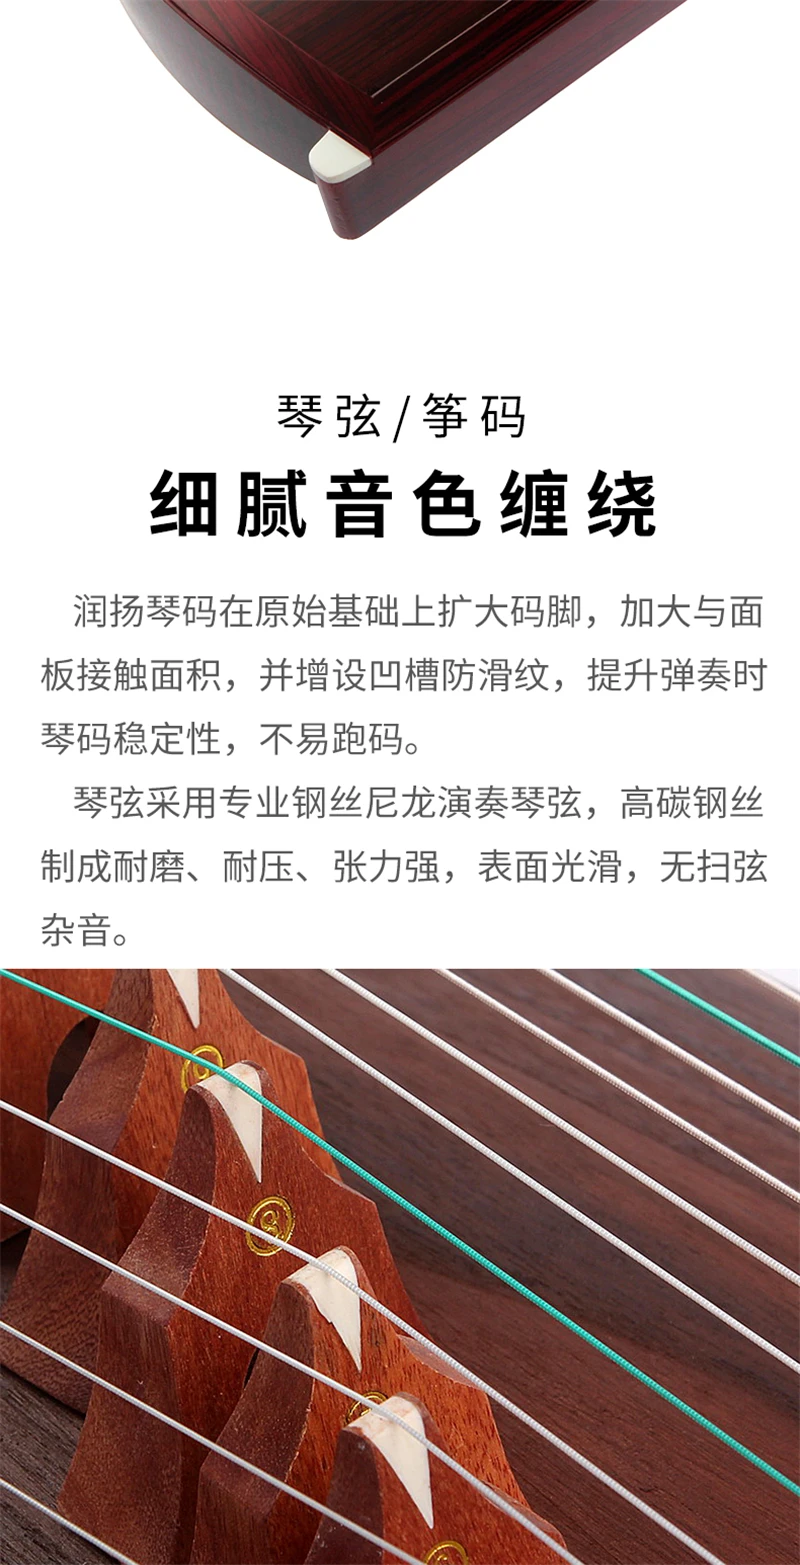 Национальный патент высокое качество Китай guzheng platane деревянные музыкальные инструменты Zither 21 струны с аксессуарами guzheng струны